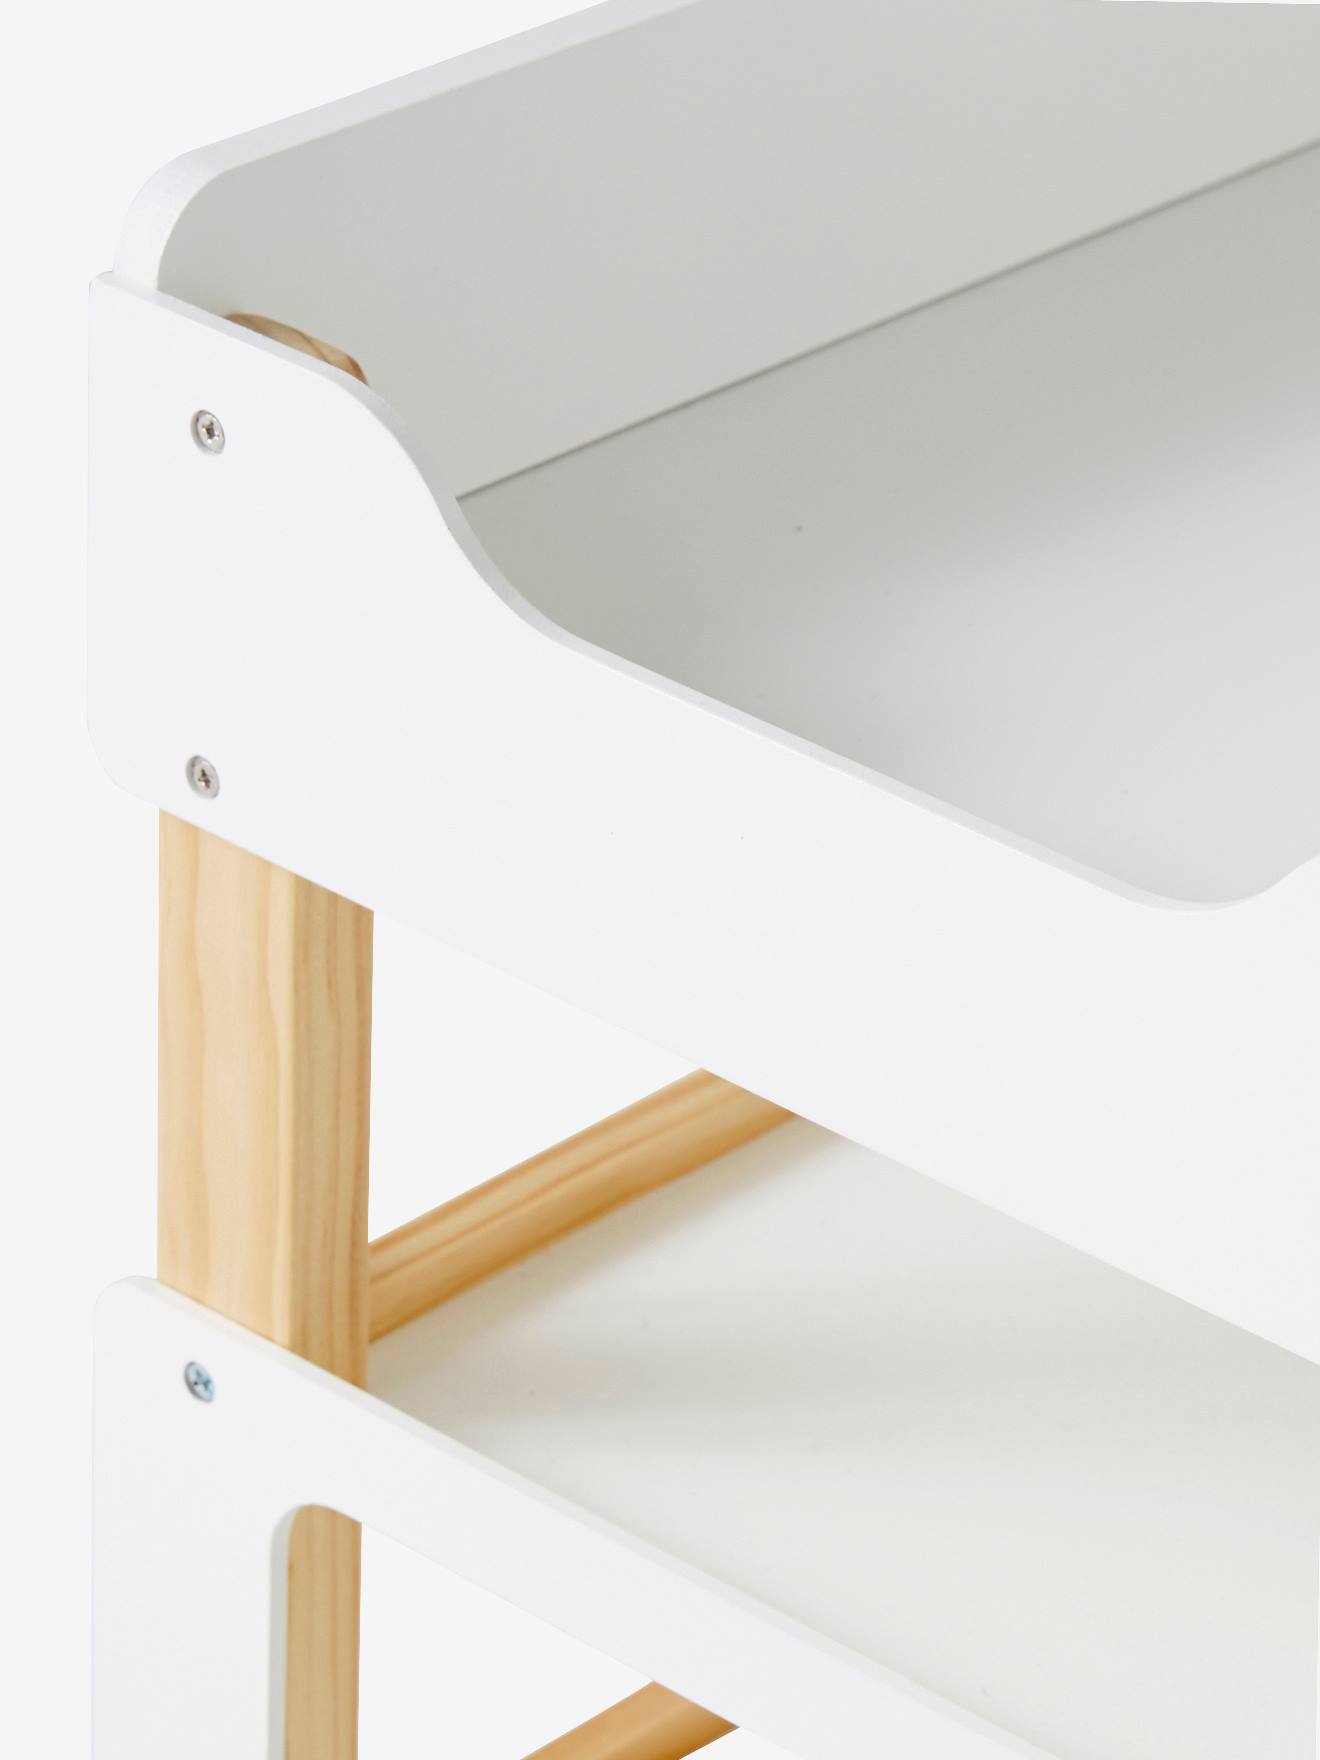 Table à langer pour poupon en bois FSC® blanc - Vertbaudet